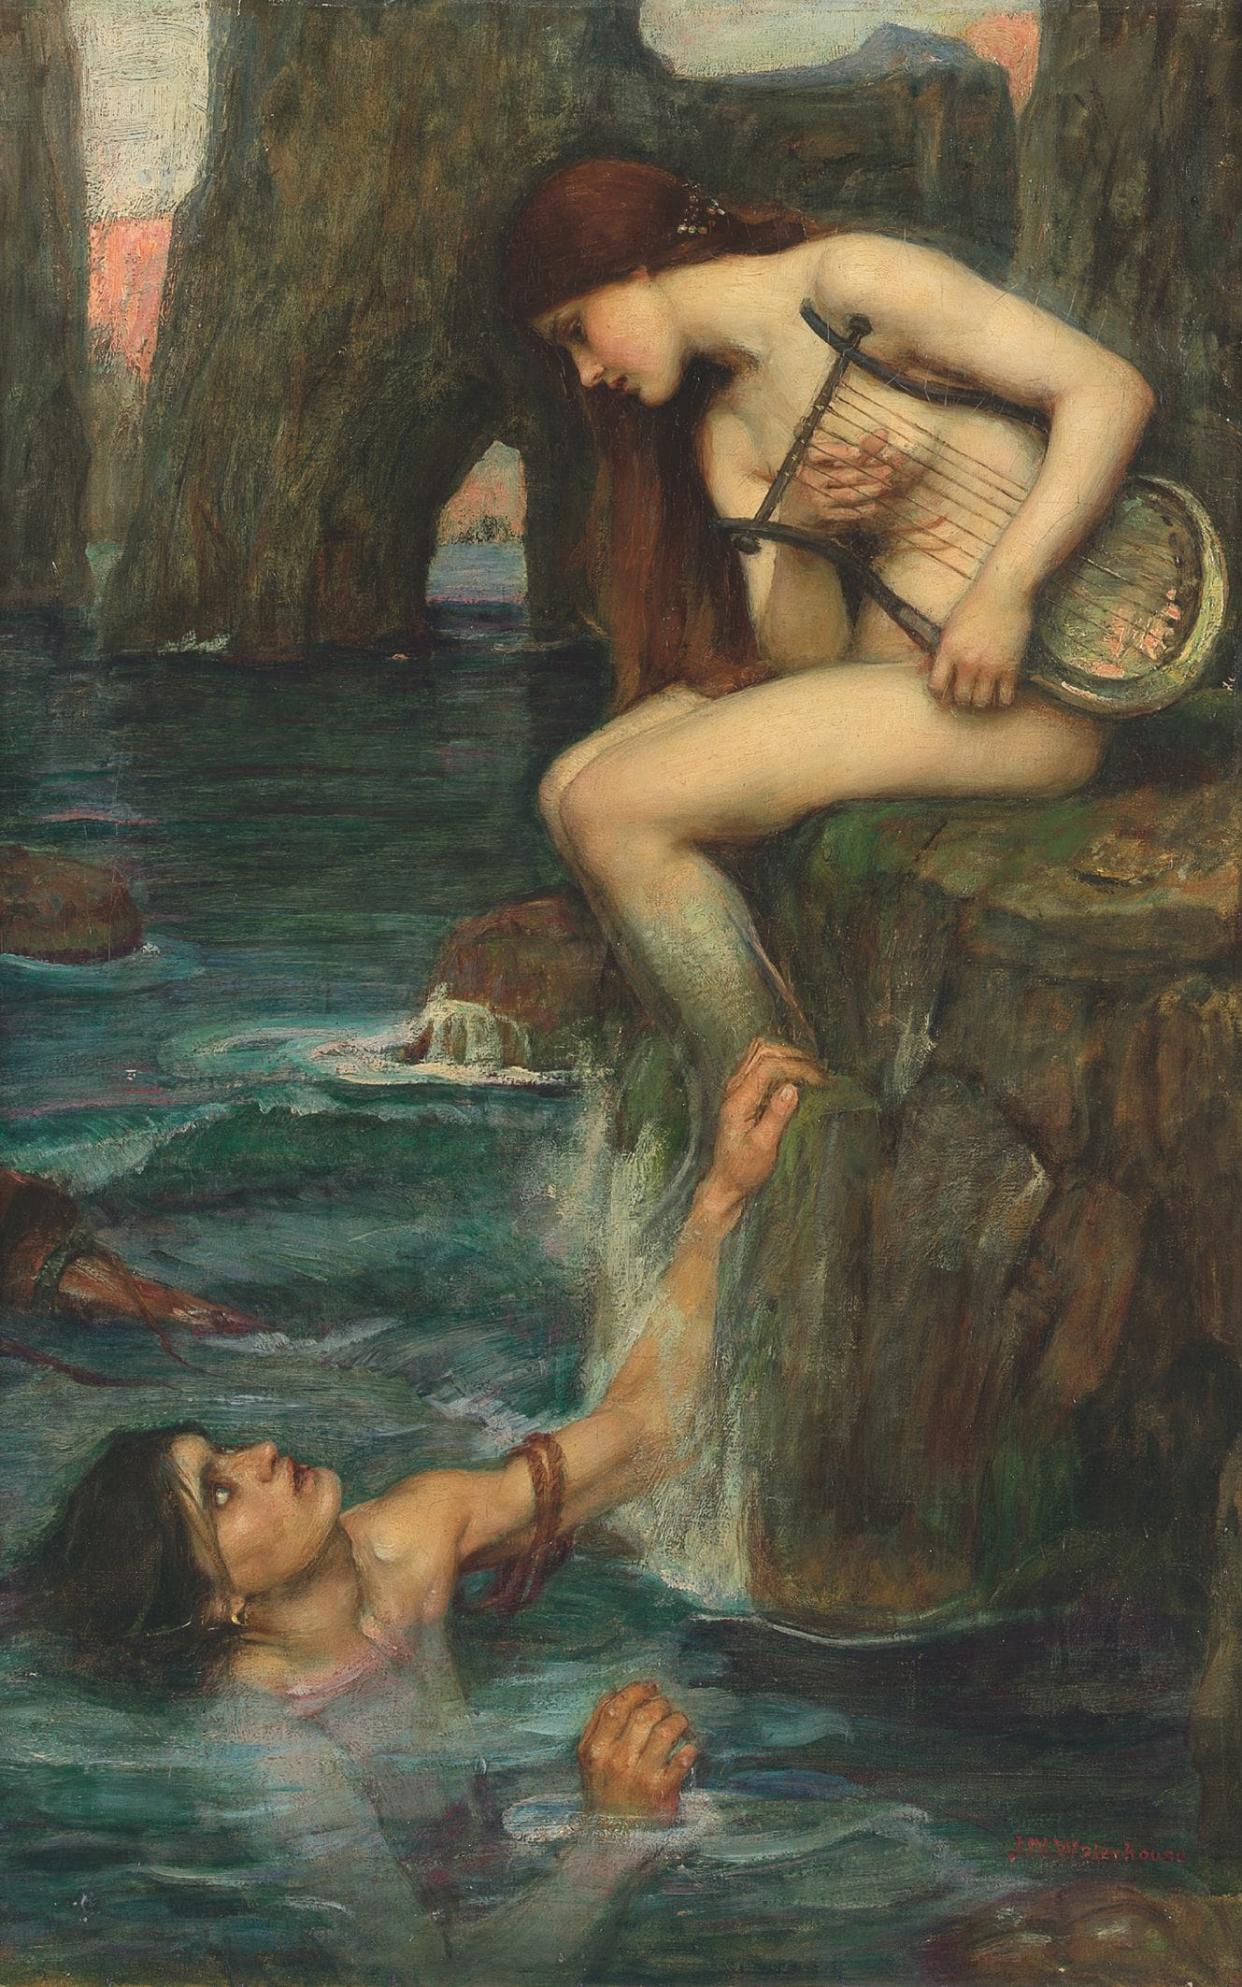 John William Waterhouse, The Siren. Estimate £1-1.5 million  - sotheby's